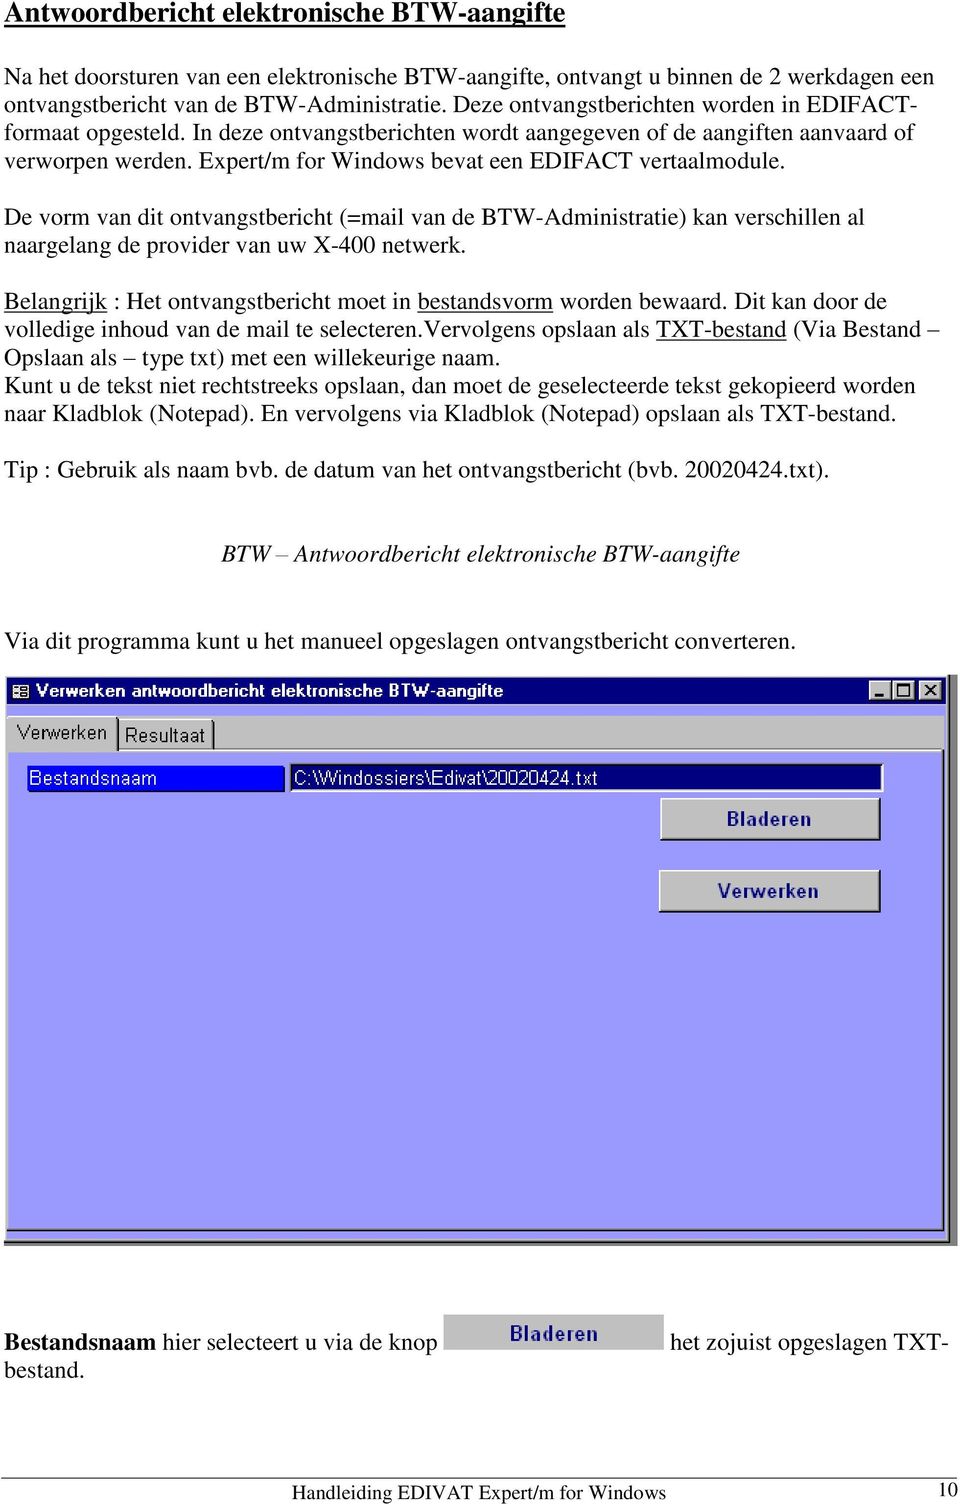 Expert/m for Windows bevat een EDIFACT vertaalmodule. De vorm van dit ontvangstbericht (=mail van de BTW-Administratie) kan verschillen al naargelang de provider van uw X-400 netwerk.